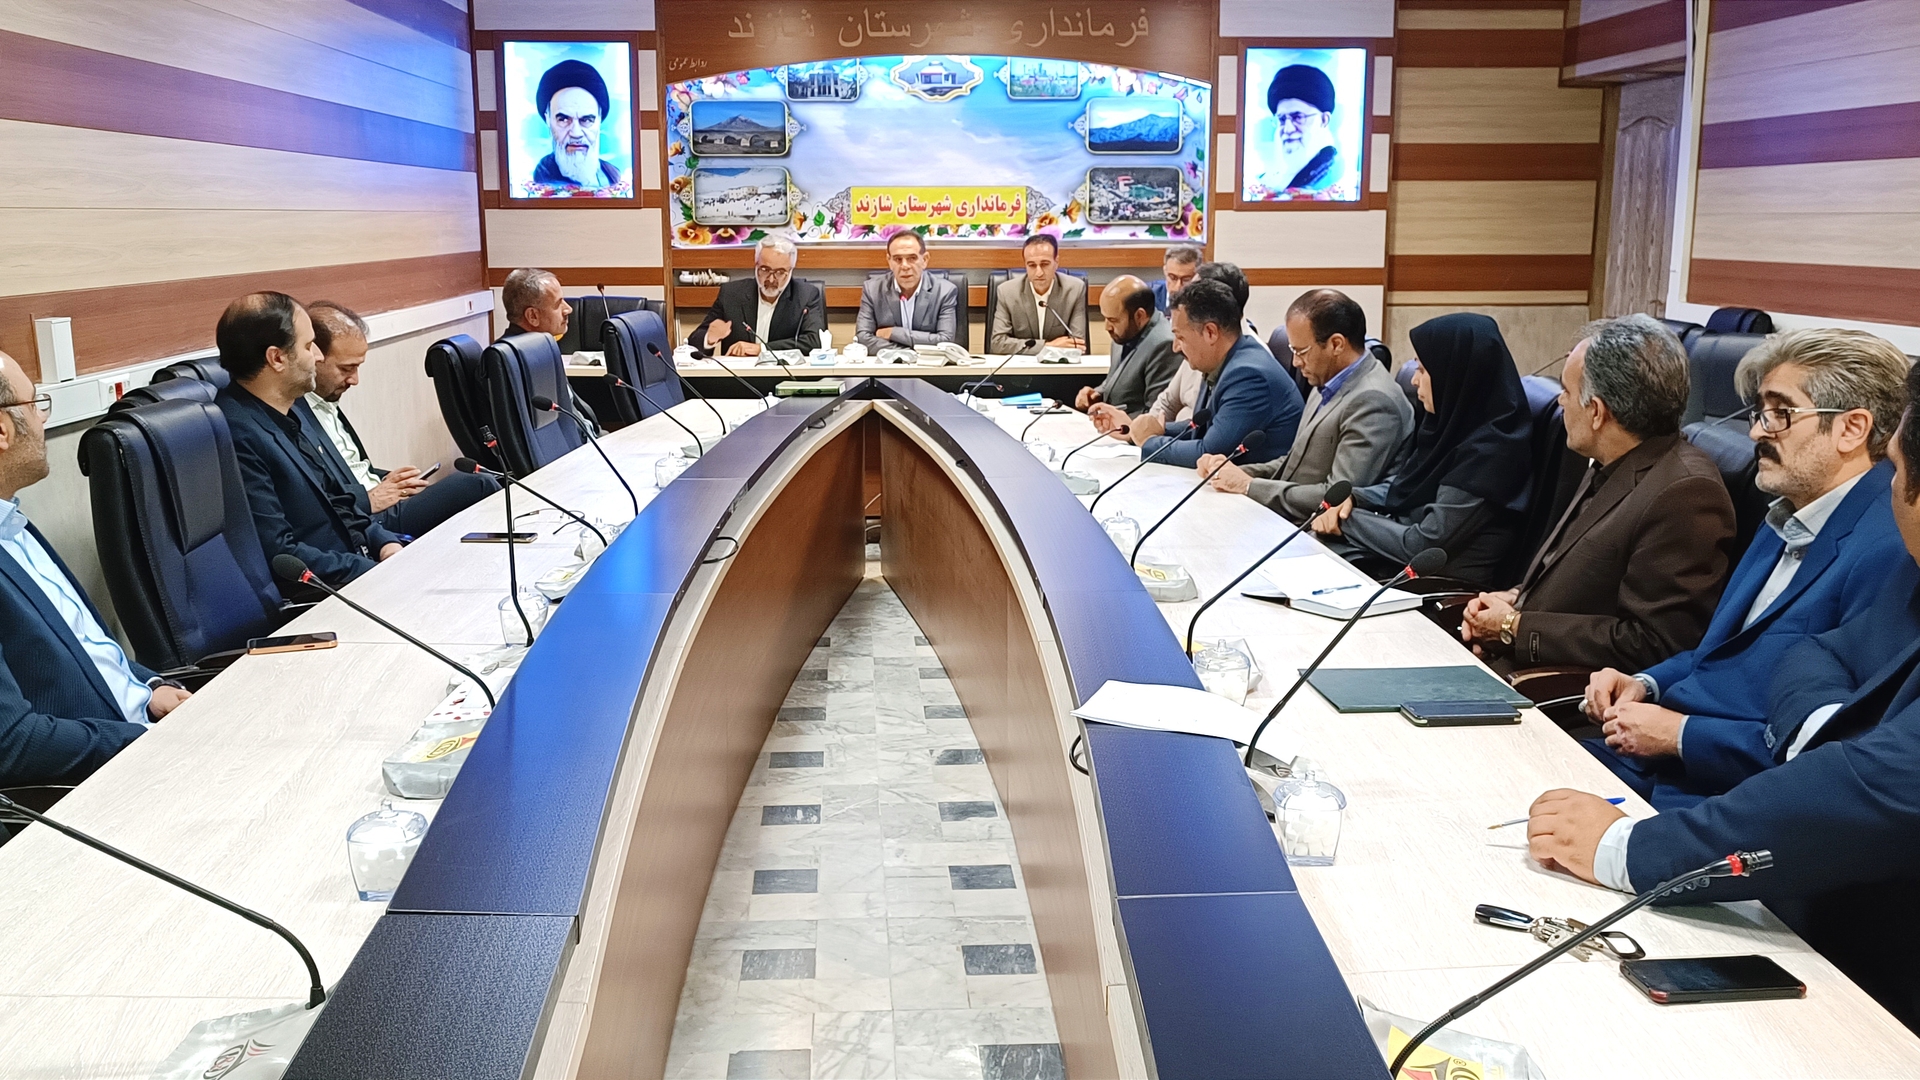 جلسه شورای هماهنگی بانکها به ریاست سرپرست فرمانداری شهرستان شازند برگزار شد .